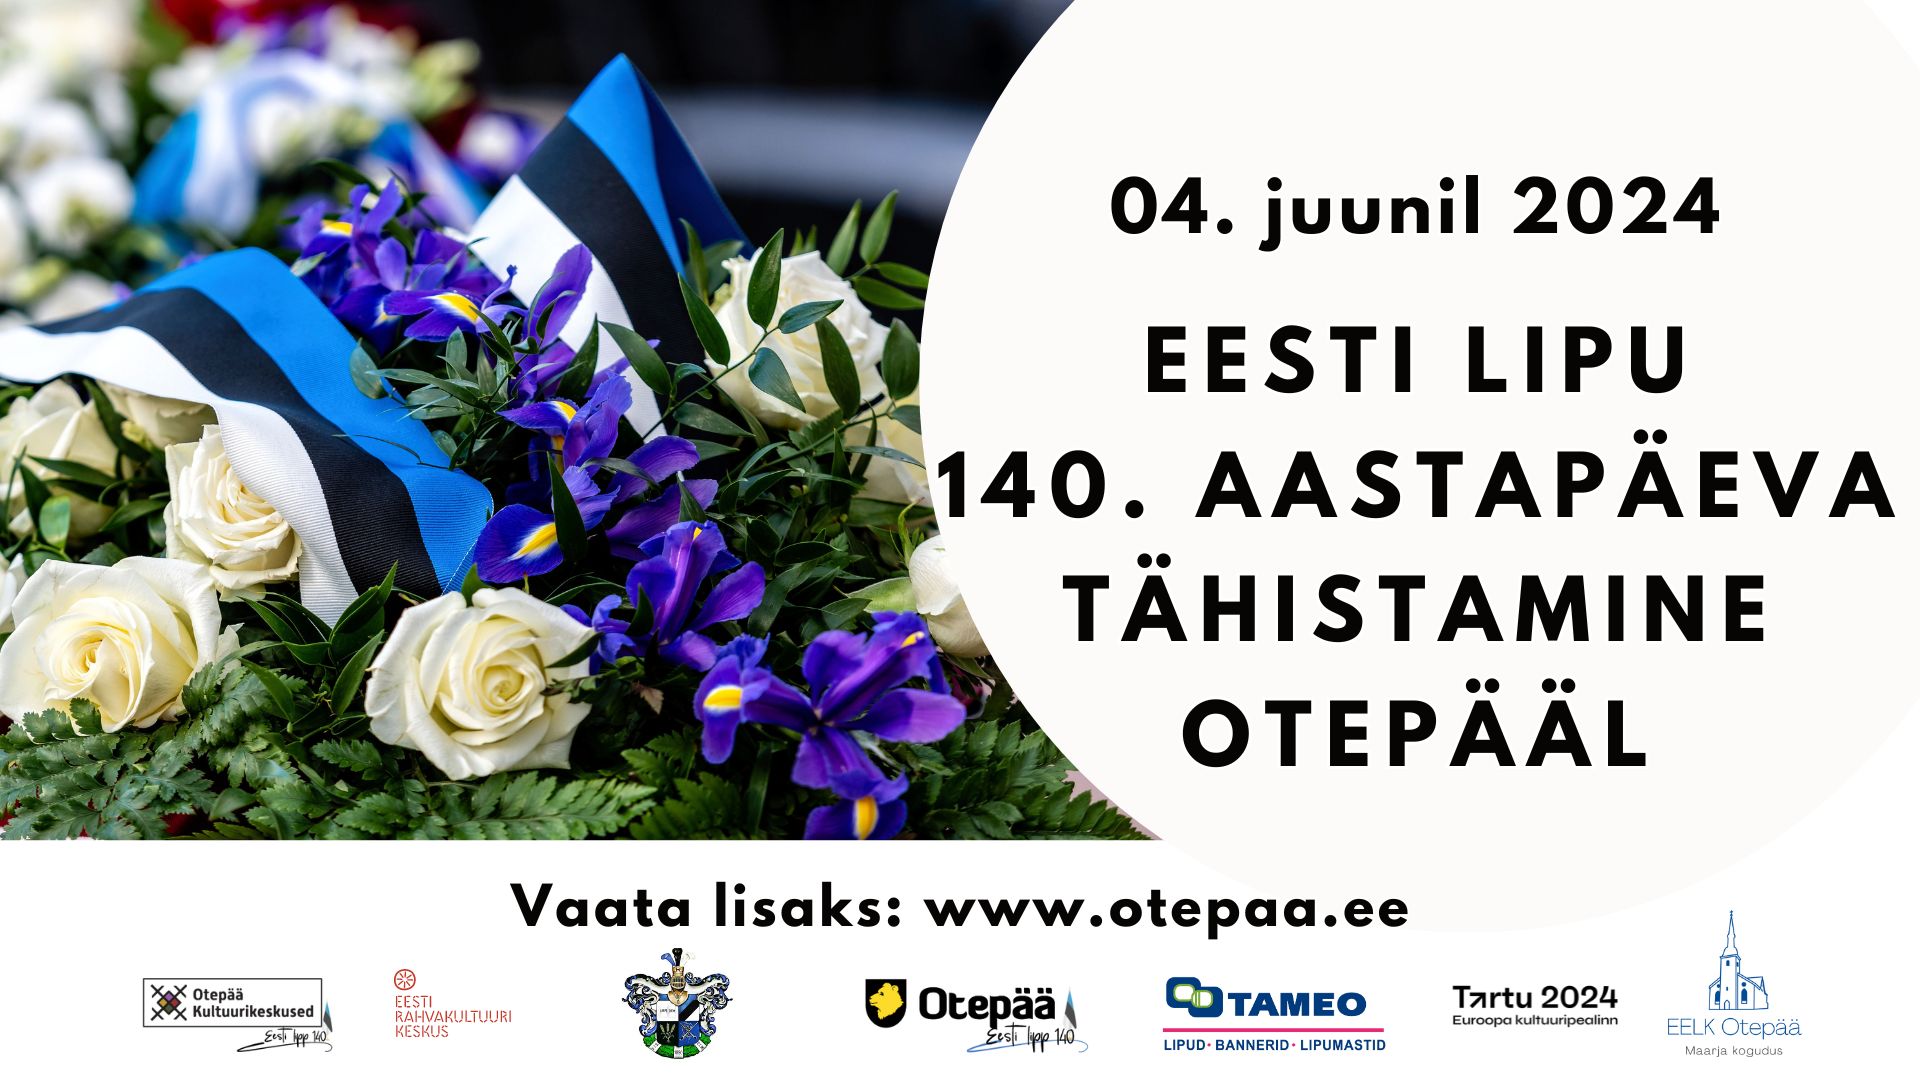 Eesti Lipu 140. aastapäeva tähistamine Otepääl